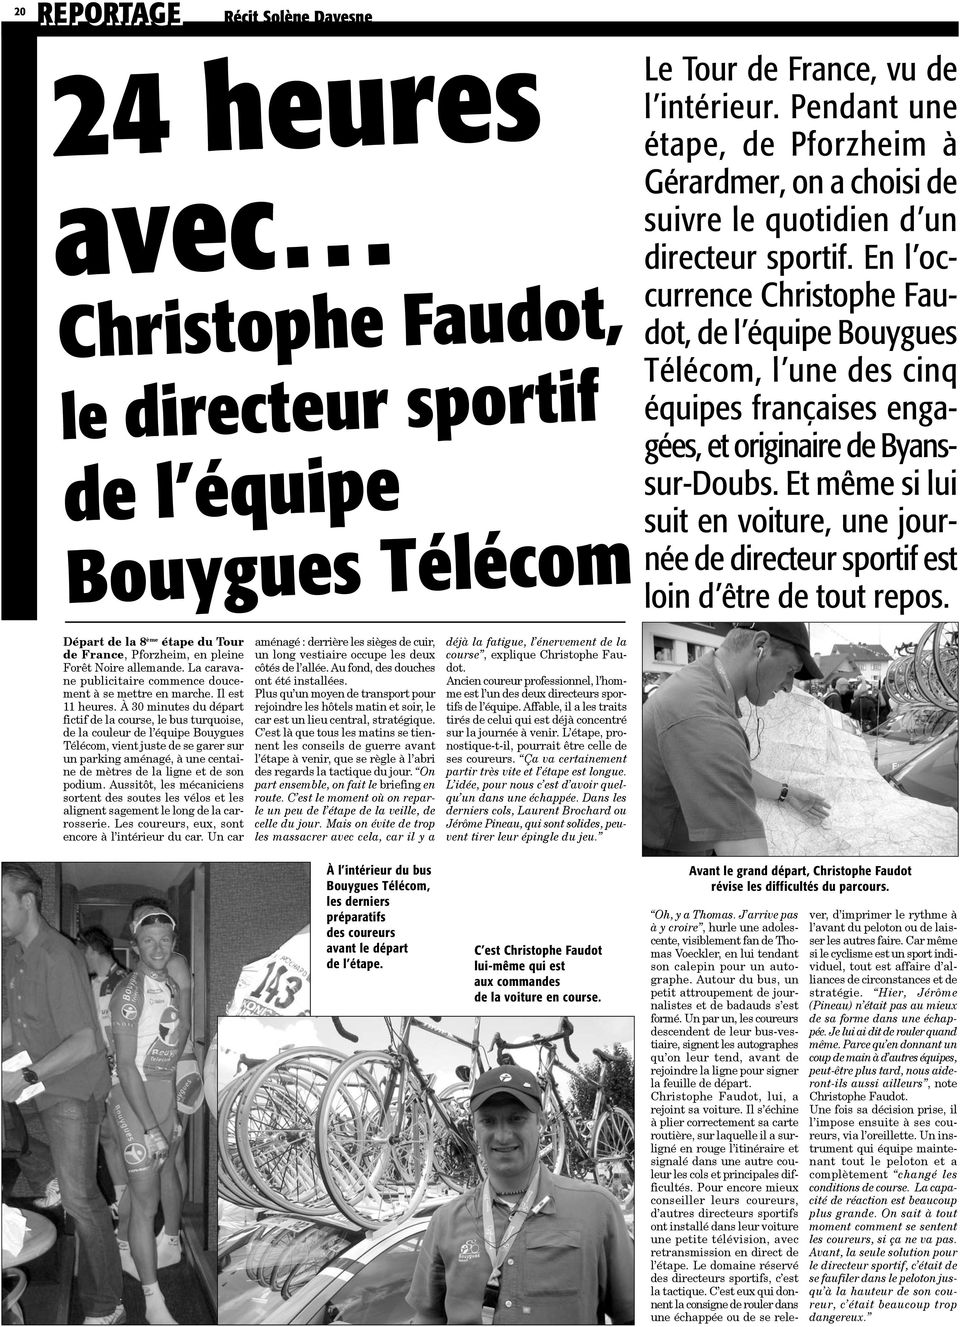 En l occurrence Christophe Faudot, de l équipe Bouygues Télécom, l une des cinq équipes françaises engagées, et originaire de Byanssur-Doubs.